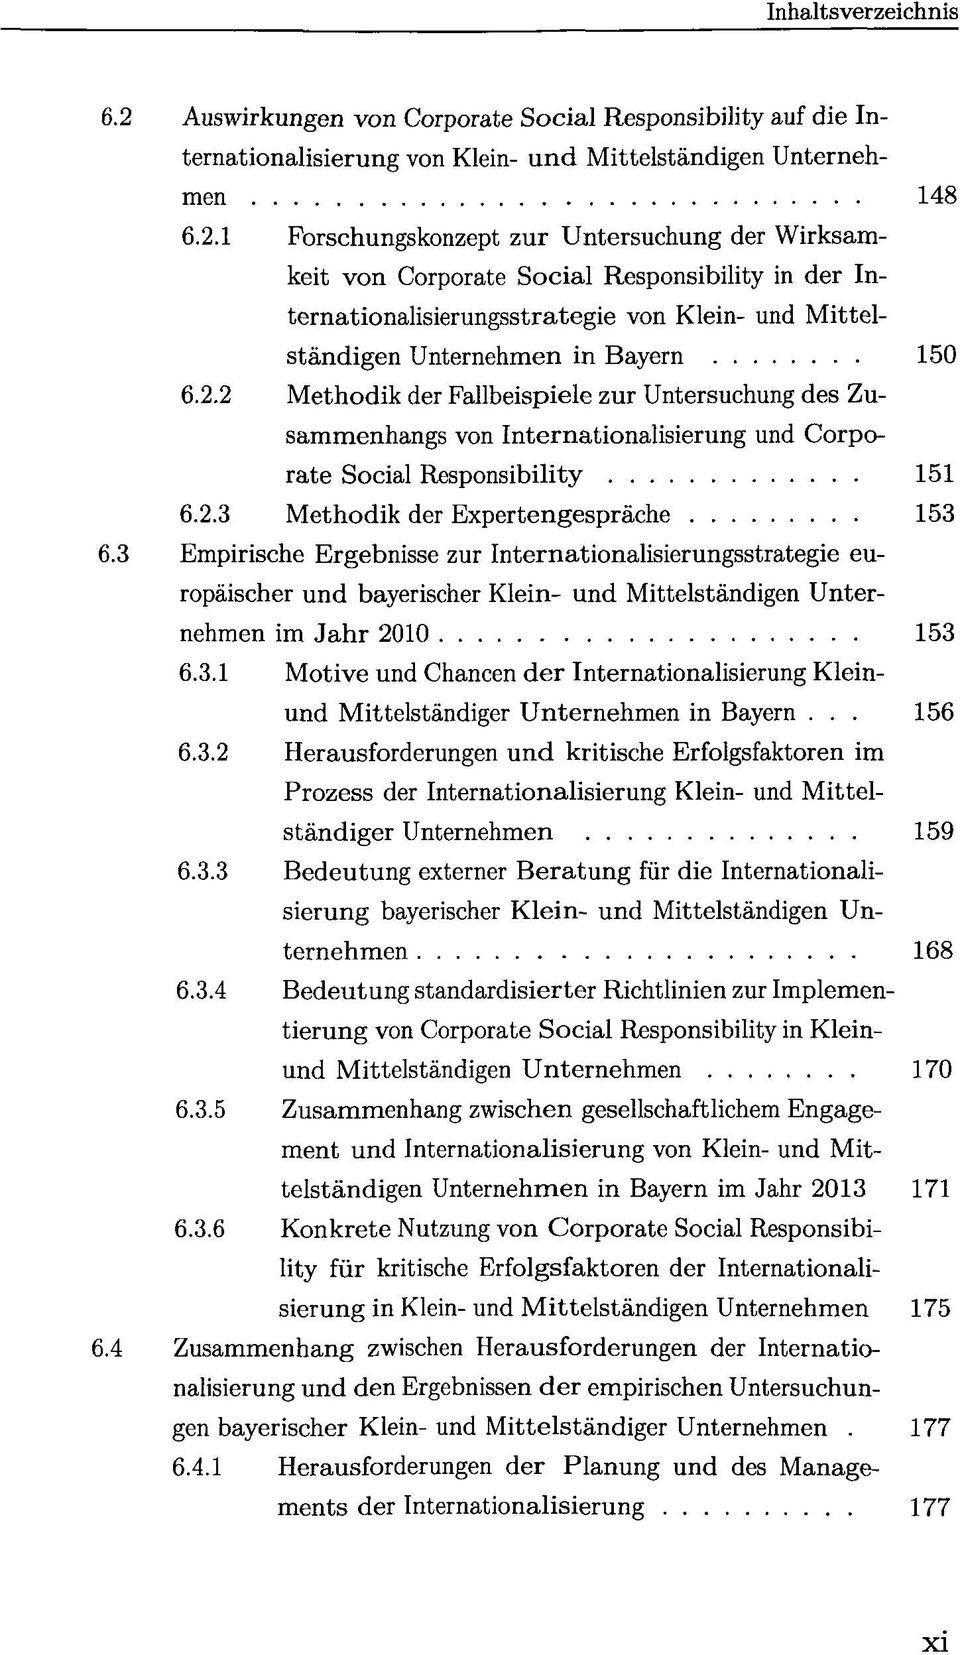 3 Empirische Ergebnisse zur Internationalisierungsstrategie europäischer und bayerischer Klein- und Mittelständigen Unternehmen im Jahr 2010 153 6.3.1 Motive und Chancen der Internationalisierung Kleinund Mittelständiger Unternehmen in Bayern.